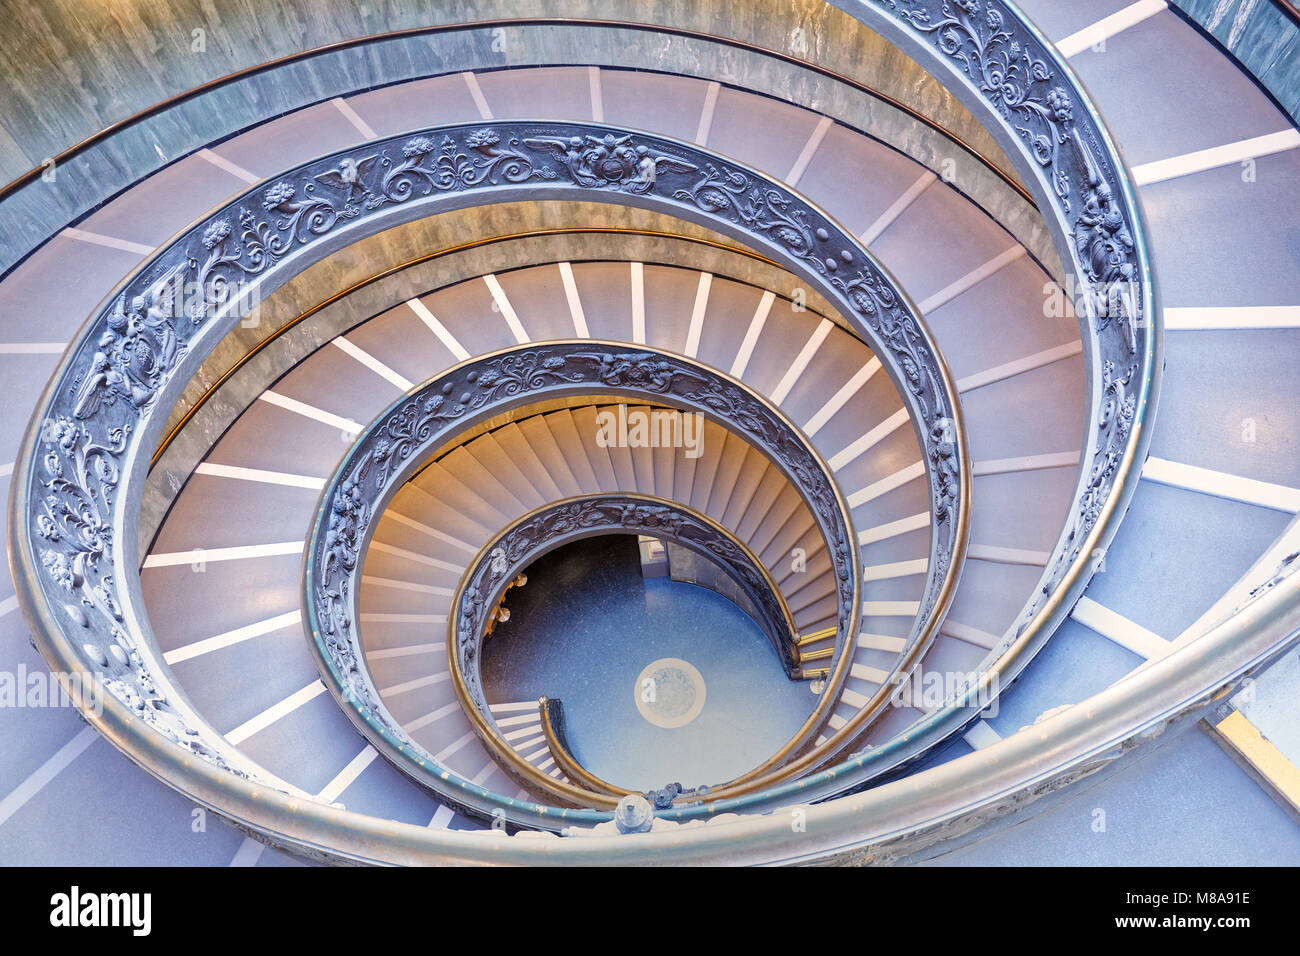 Ciudad del Vaticano. La moderna escalera de doble hélice en el Museo Pio-Clementine, diseñado por Giuseppe Momo, sin personas. Foto de stock